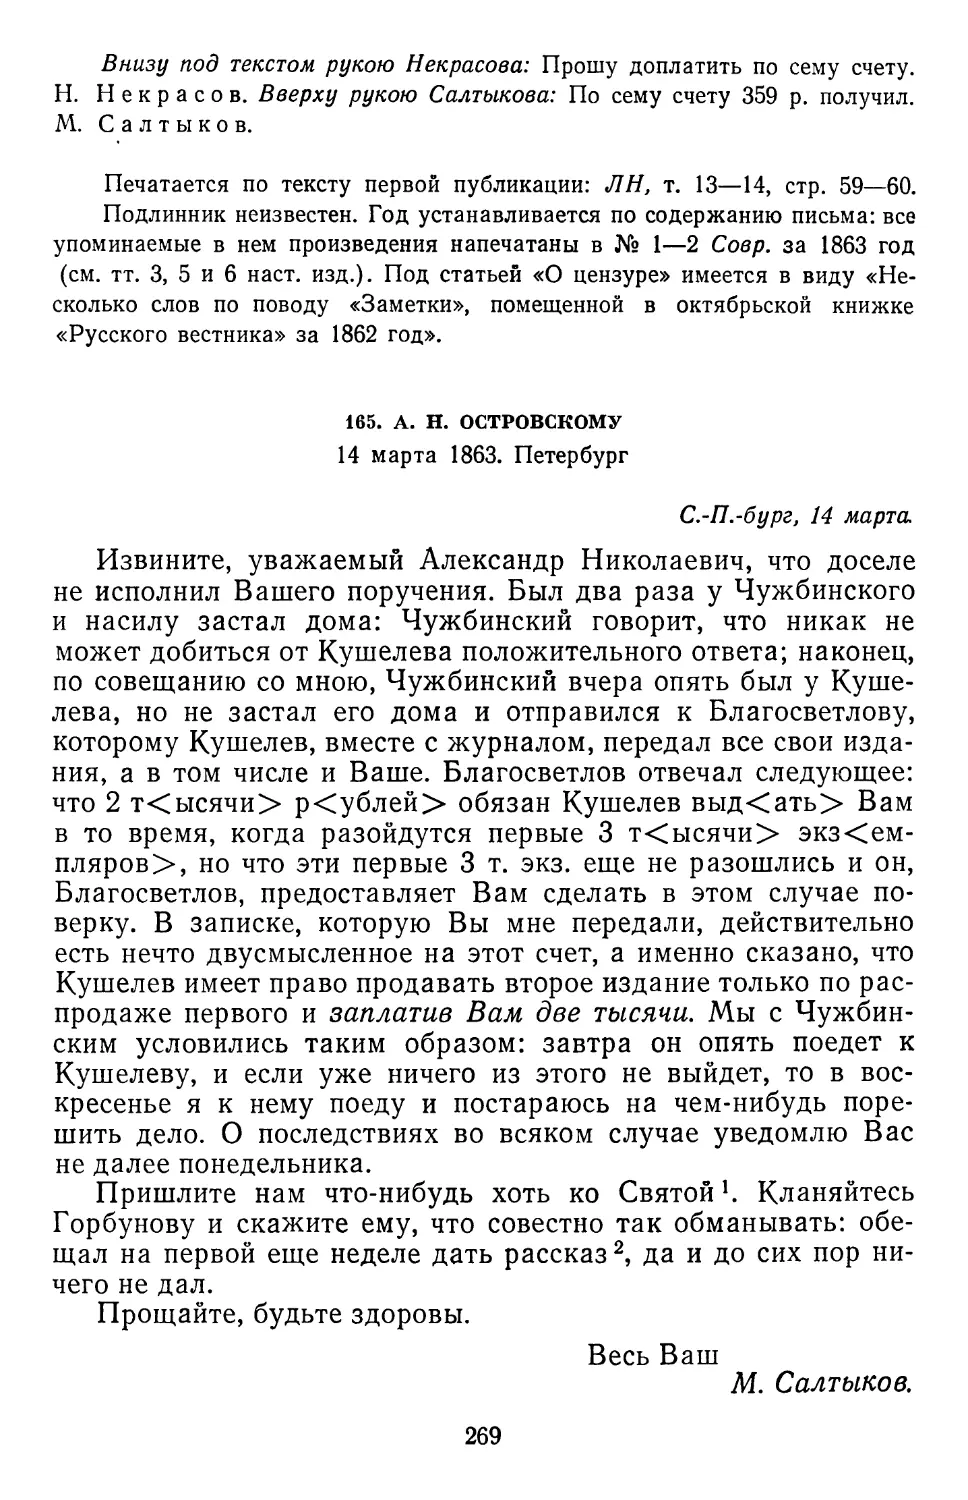 165.А.Н. Островскому. 14 марта 1863. Петербург